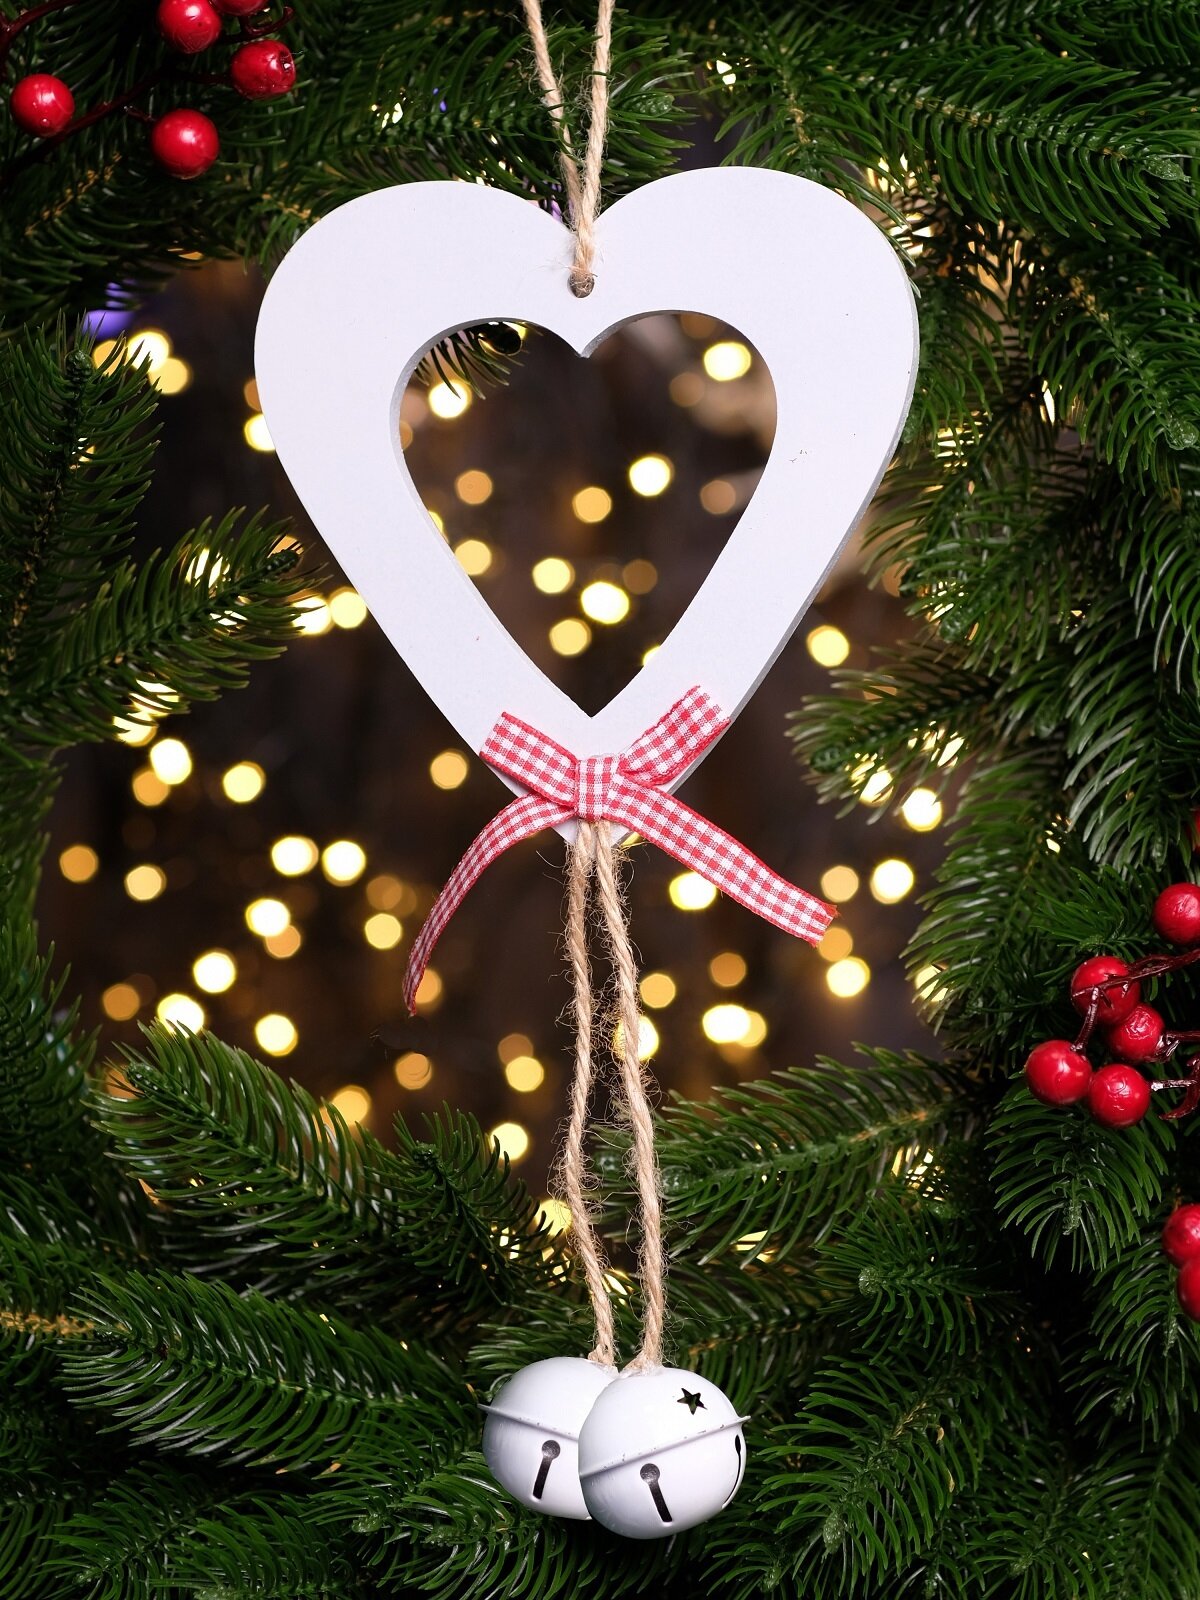 Рождественское украшение Подвеска на елку в форме сердца с колокольчиком, 15 см, China Dans, артикул 9918146